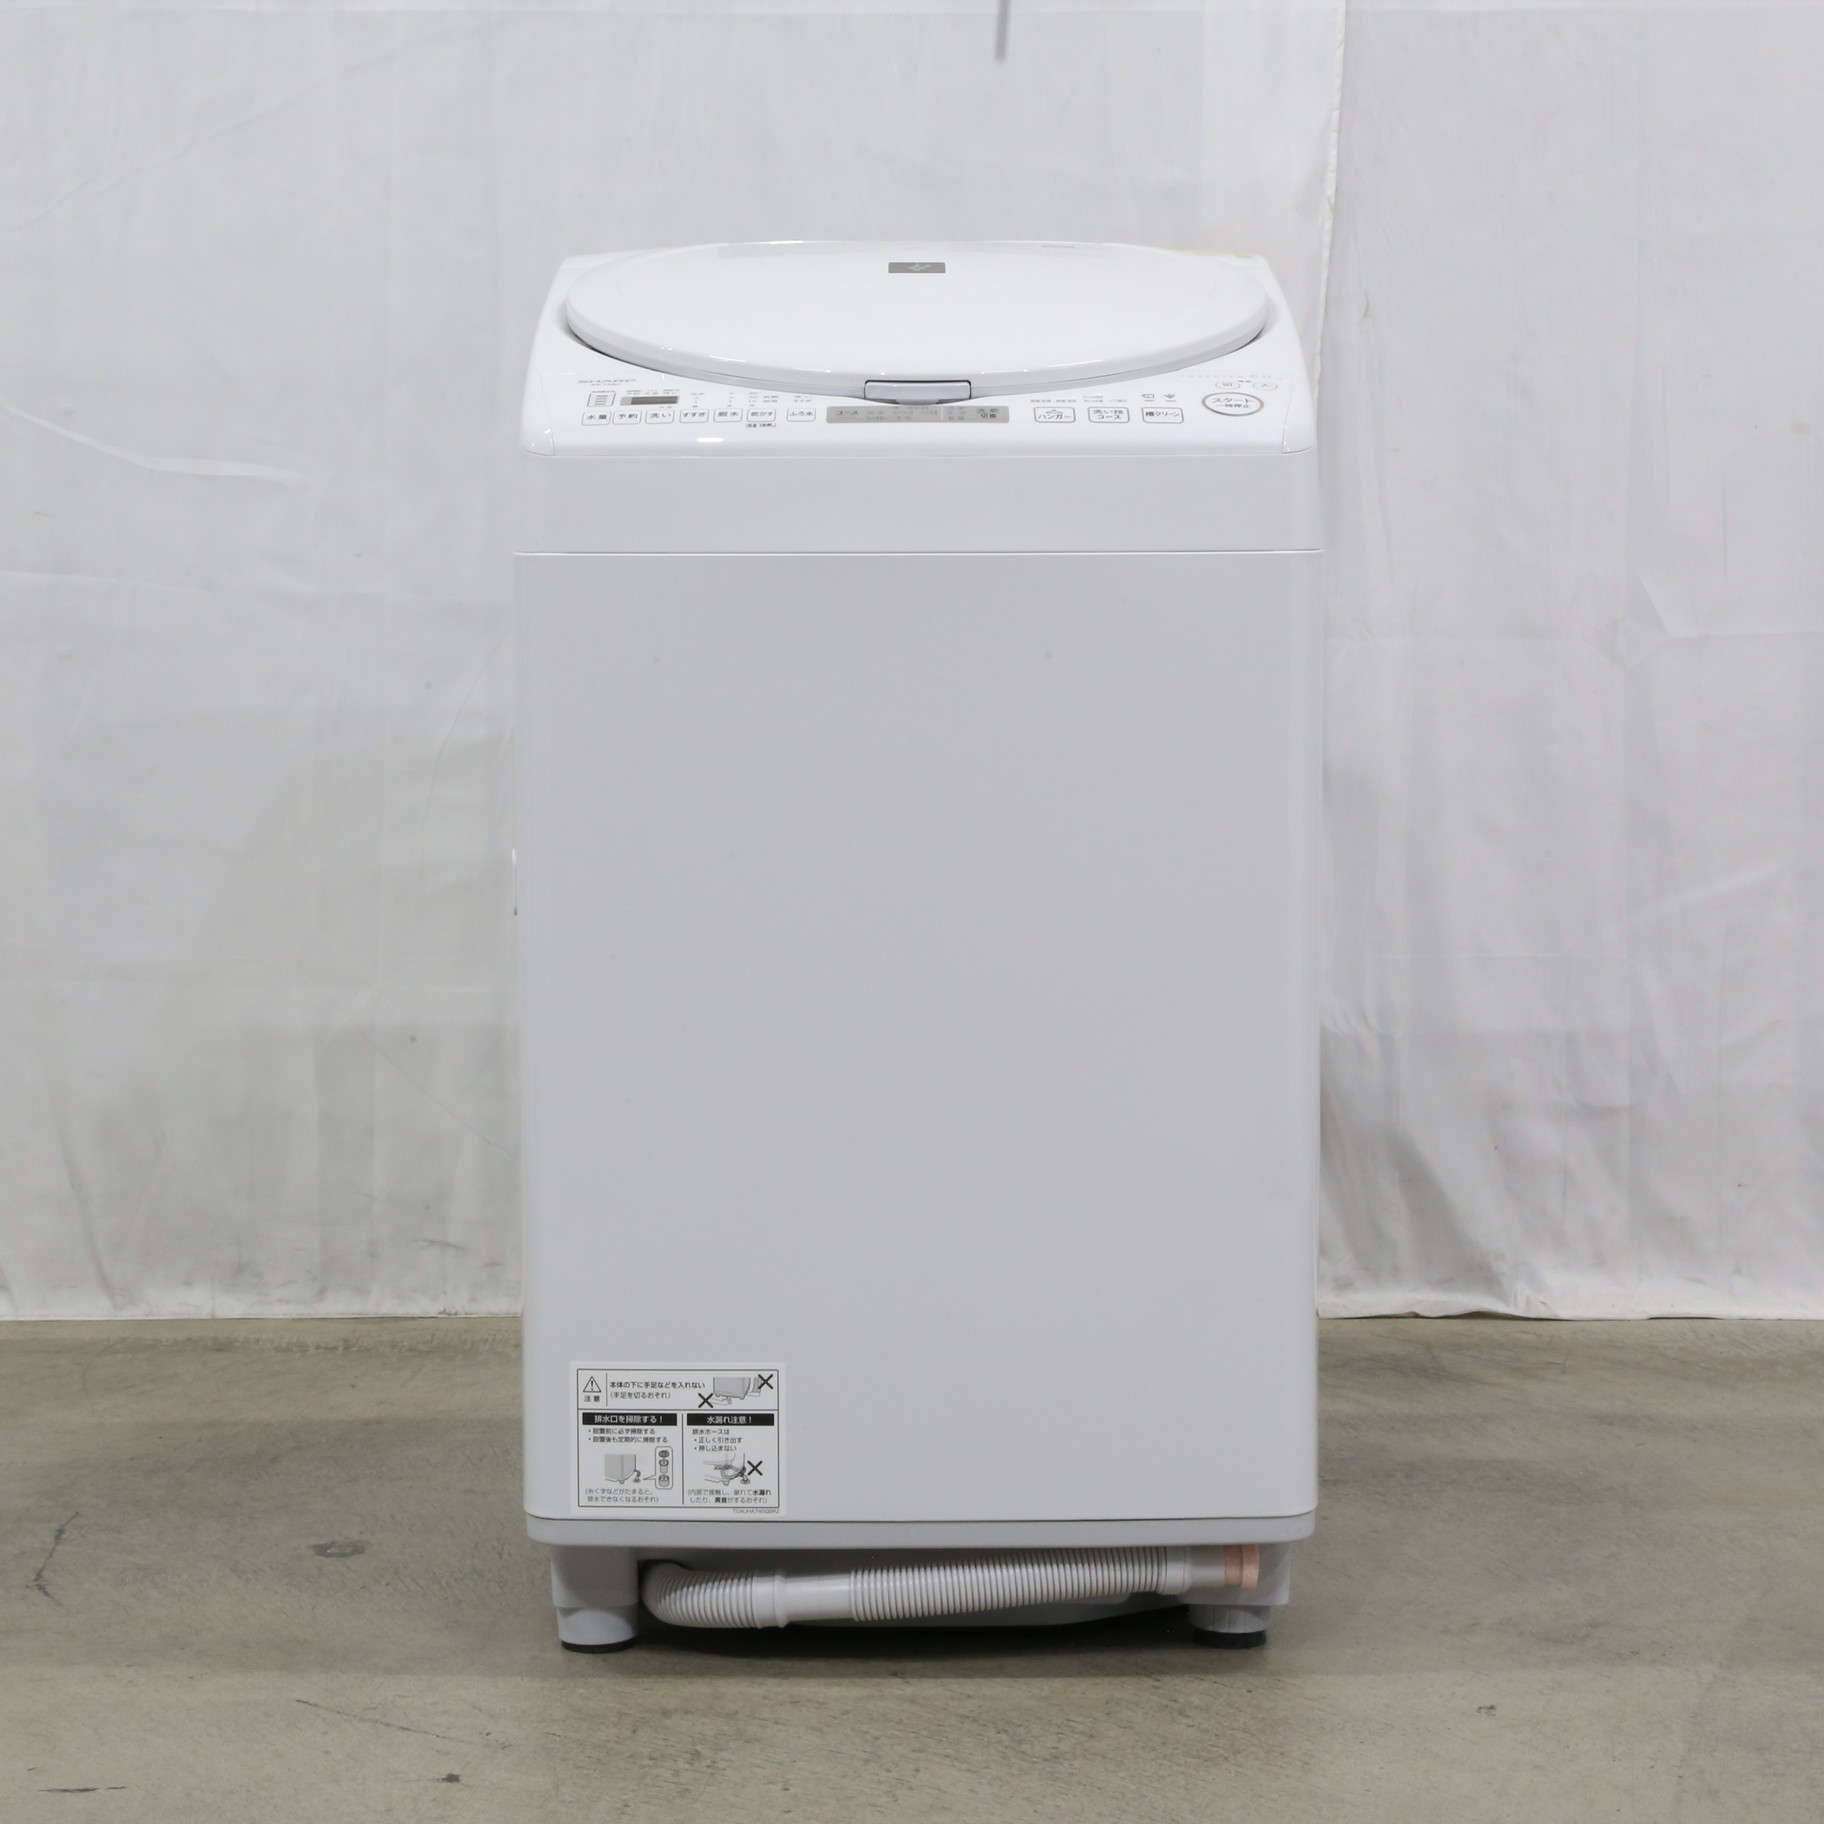 〔中古品〕 ES-TX8H-W 縦型乾燥洗濯機 ホワイト系 [洗濯8.0kg ／乾燥4.5kg ／ヒータ乾燥（排気タイプ）上開き] ES-TX8H-W  ［洗濯8.0kg ／乾燥4.5kg ／ヒーター乾燥(排気タイプ) ／上開き］